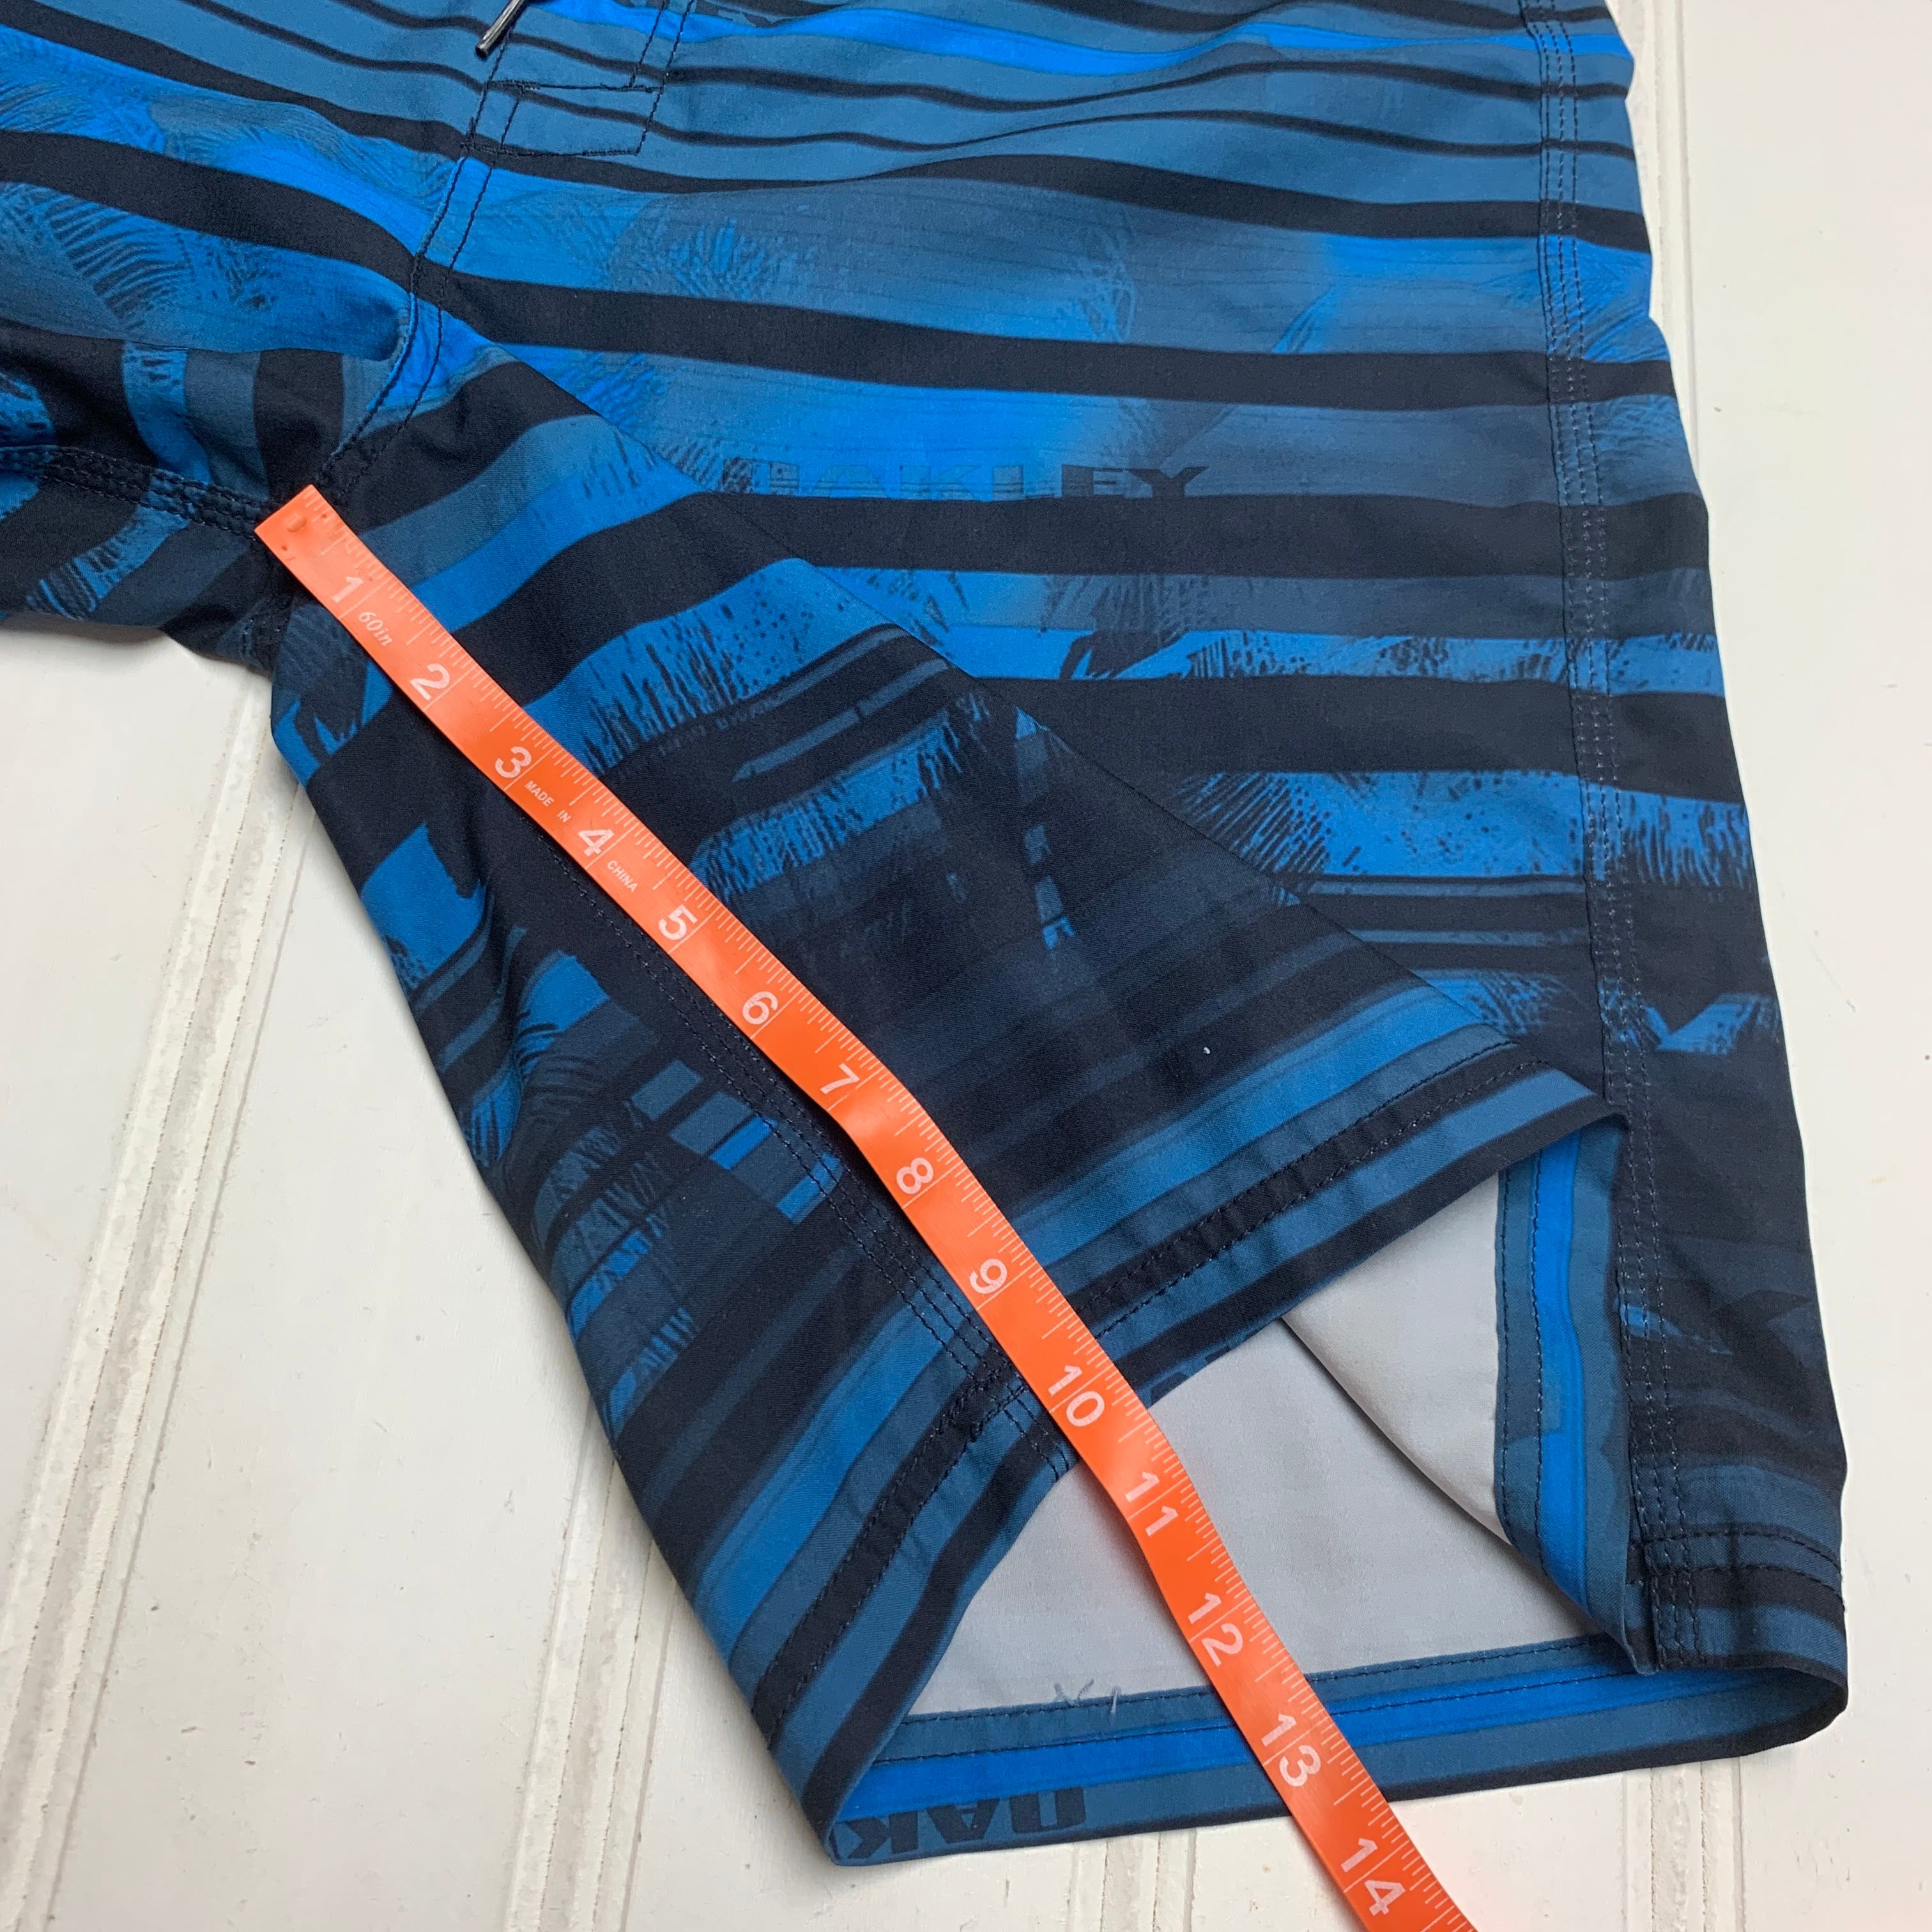 Oakley Oakley Striped Surf Board Shorts Swim Trunks 36 Size US 36 / EU 52 - 9 Thumbnail